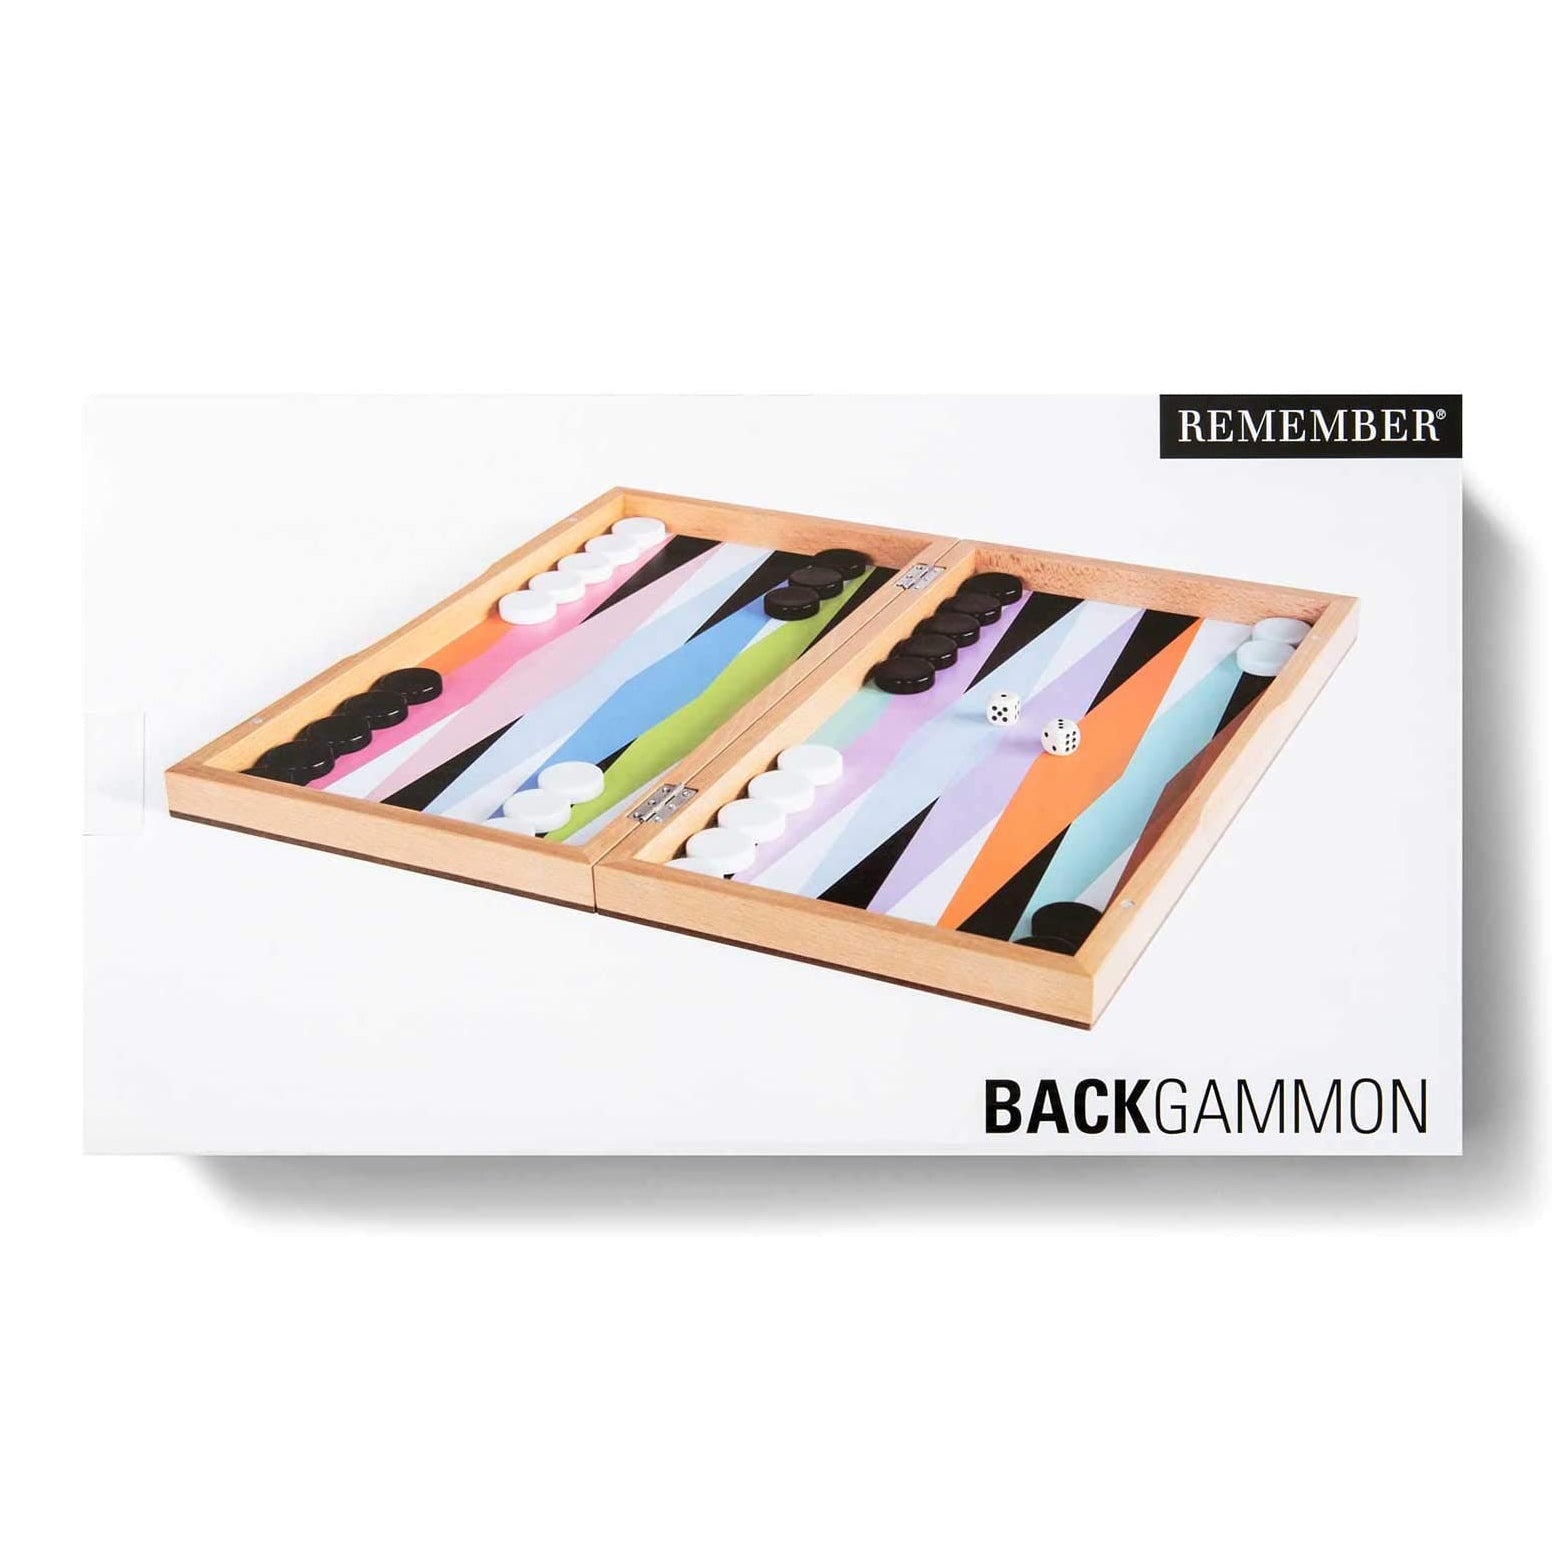 Backgammon Bordspel│Remember│Toys & Games voor design liefhebbers│verpakking│art. 692206